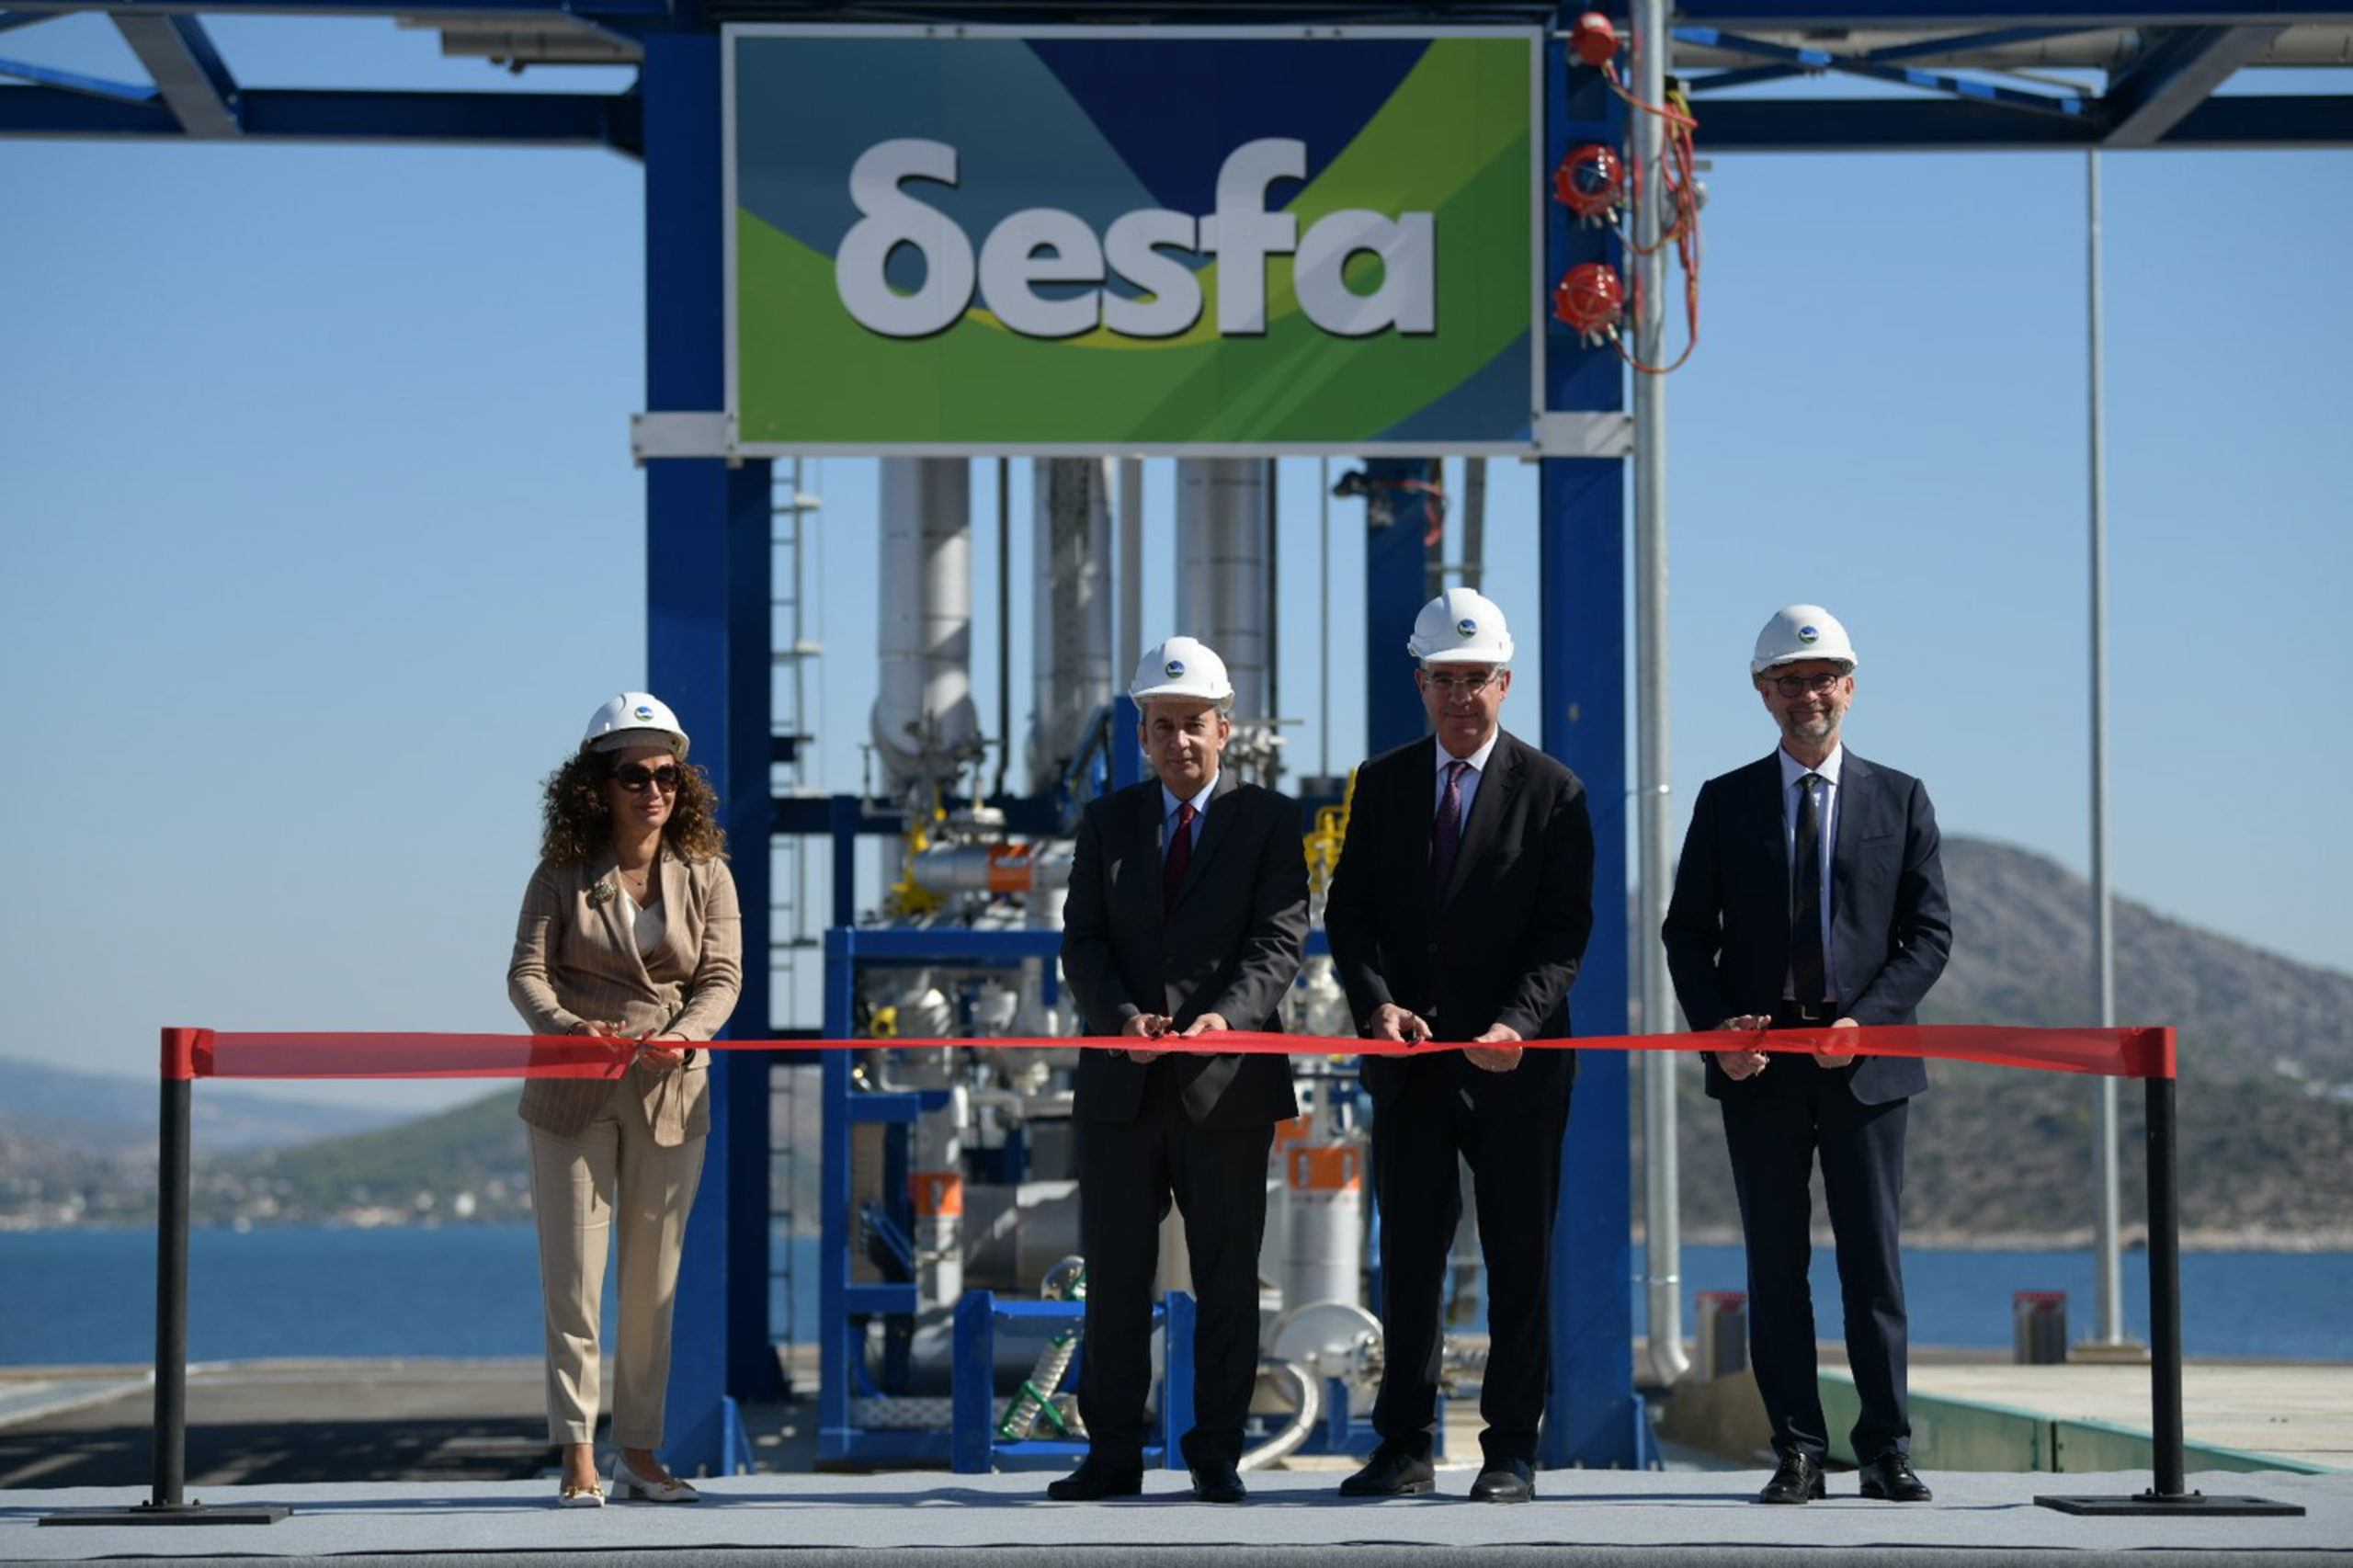 Ρεβυθούσα: Ξεκίνησε να λειτουργεί η νέα πλωτή δεξαμενή αποθήκευσης φυσικού αερίου που εγκατέστησε ο ΔΕΣΦΑ